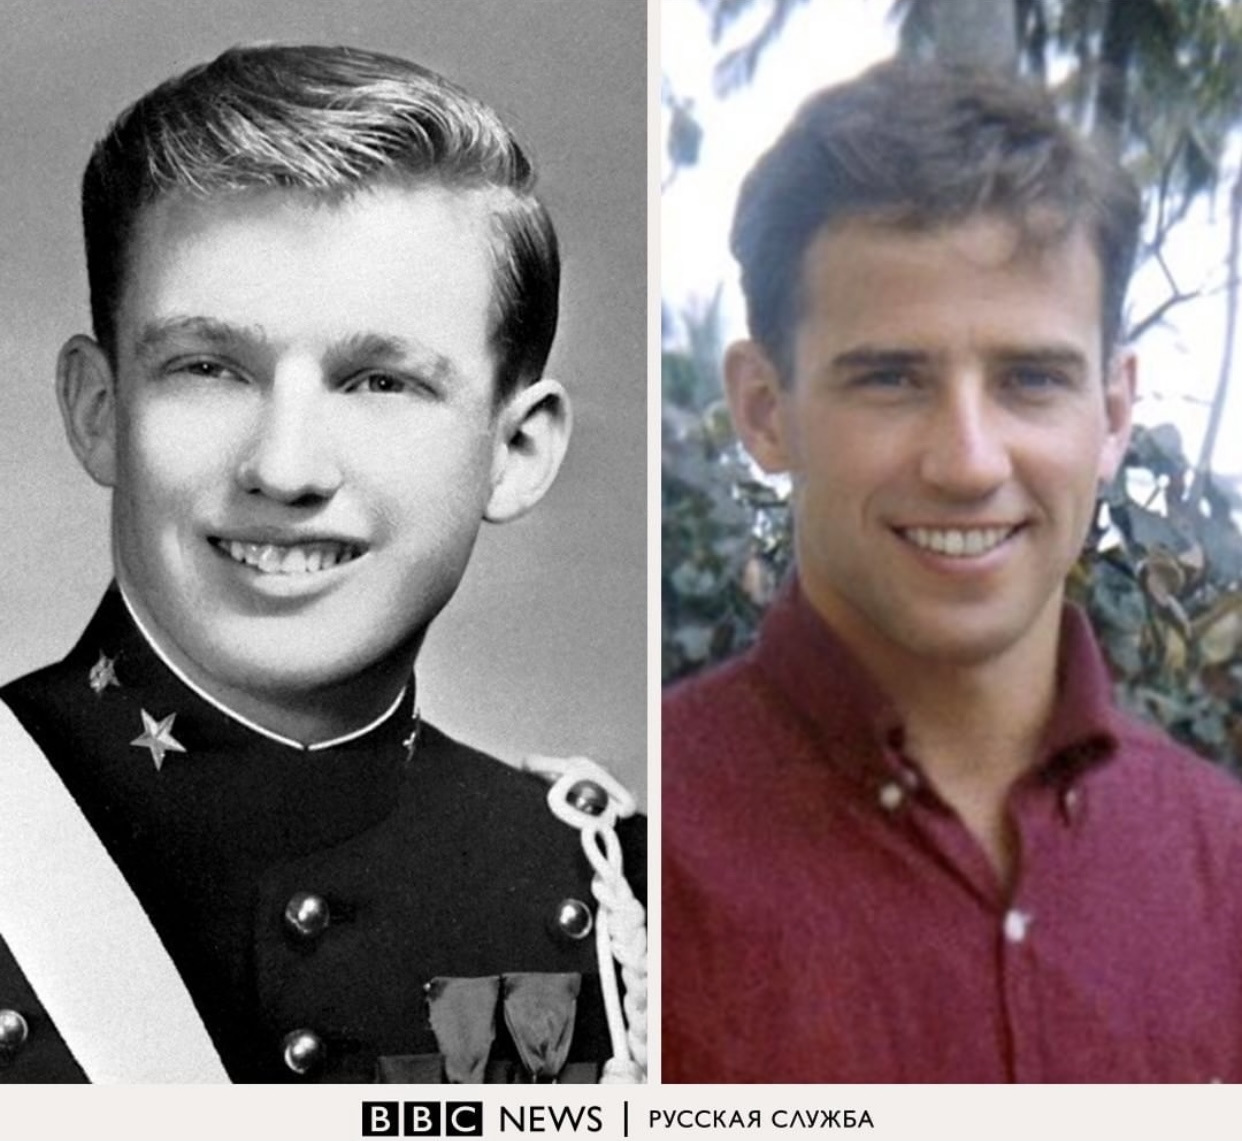 Дональд трамп фото в молодости до и после пластики